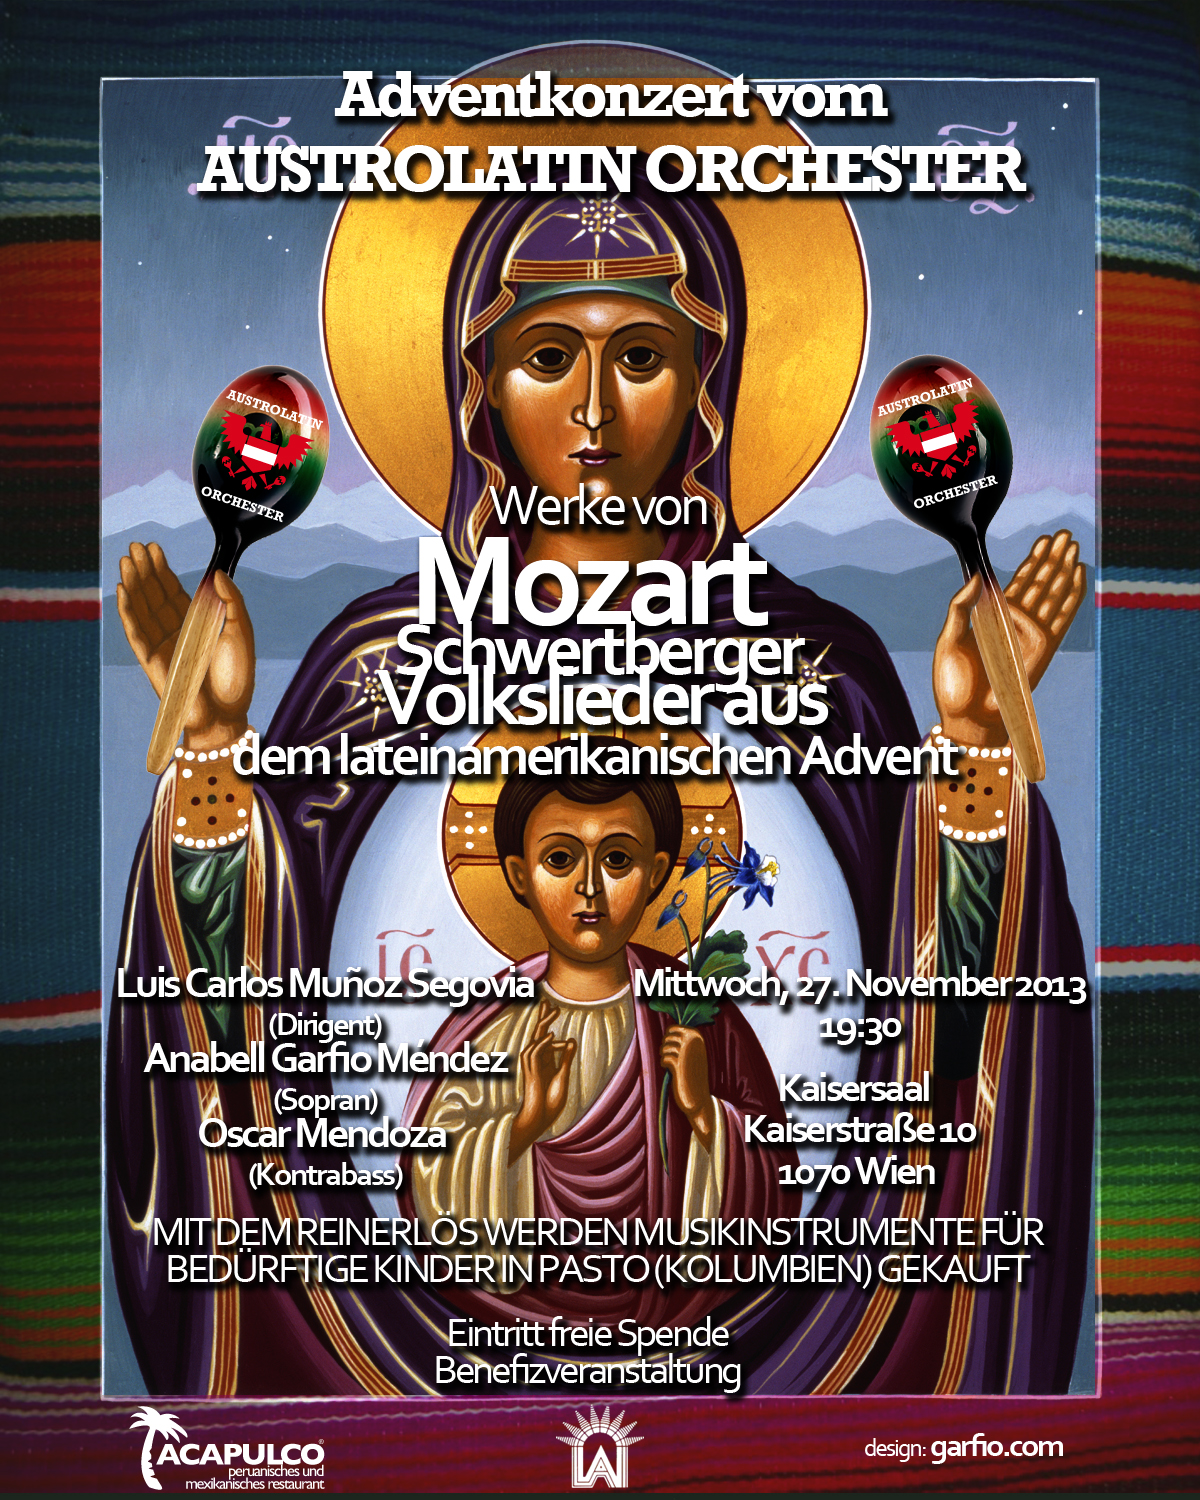 Adventkonzert Austrolatin Orchester: Mittwoch den 27. November 2013 19:30      Kaisersaal  1070 Wien; Kaiserstraße 10